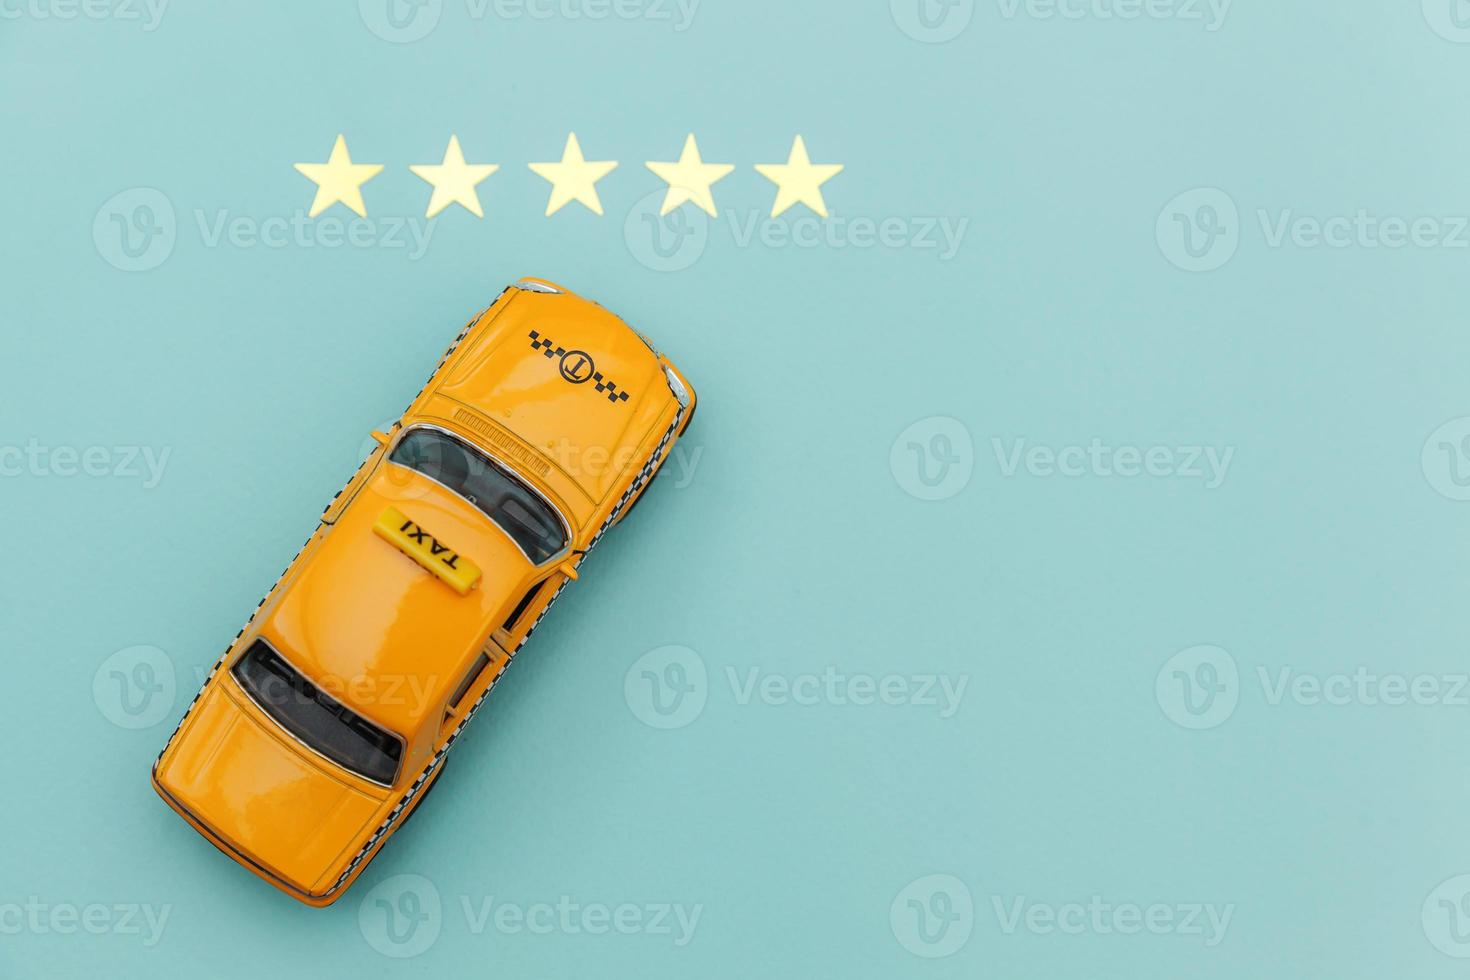 taxi voiture jouet jaune et cote 5 étoiles isolé sur fond bleu. application smartphone du service de taxi pour la recherche en ligne, appeler et réserver le concept de taxi. symbole de taxi. espace de copie. photo